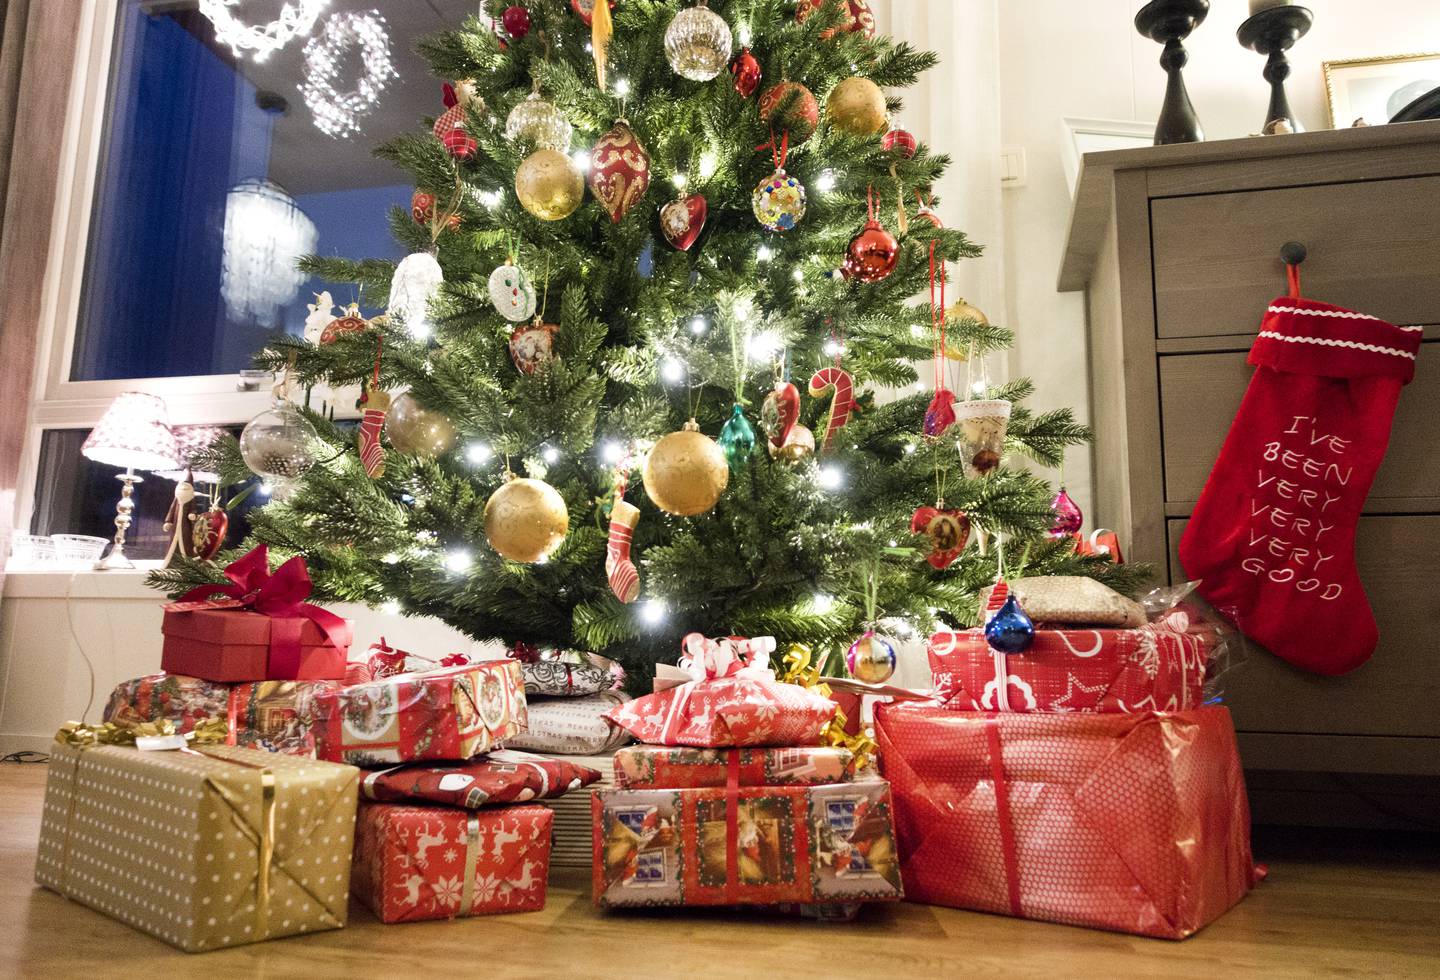 Nesten éin av tre foreldre er bekymra for at dei ikkje kan gi julegåver til barna i år, ifølgje ei undersøking. Foto: Gorm Kallestad / NTB/ NPK